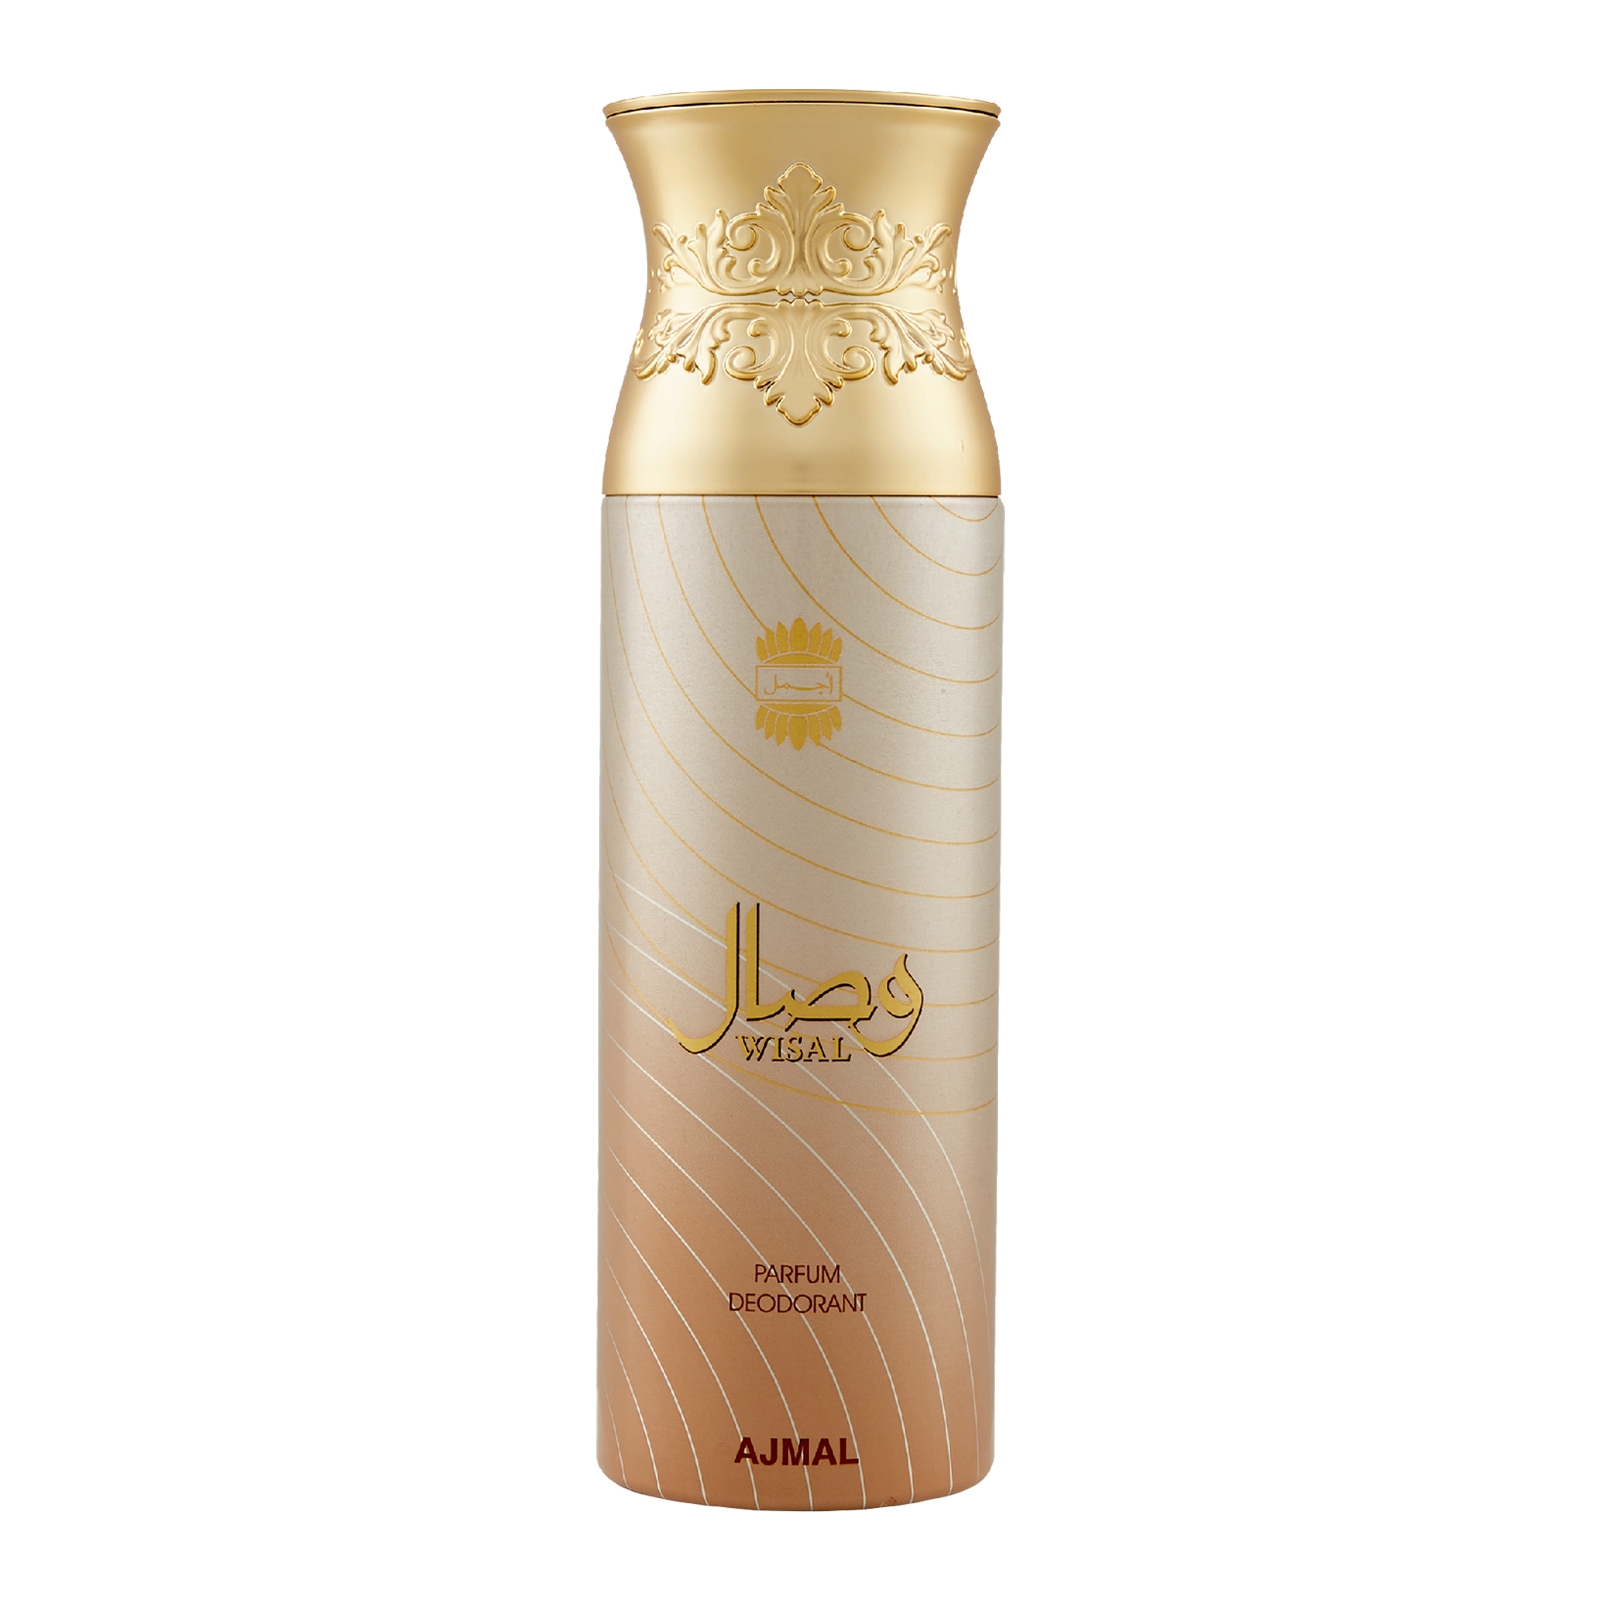 Ajmal | Ajmal Wisal Perfume Deodorant 200ml Body Spray Gift For Women